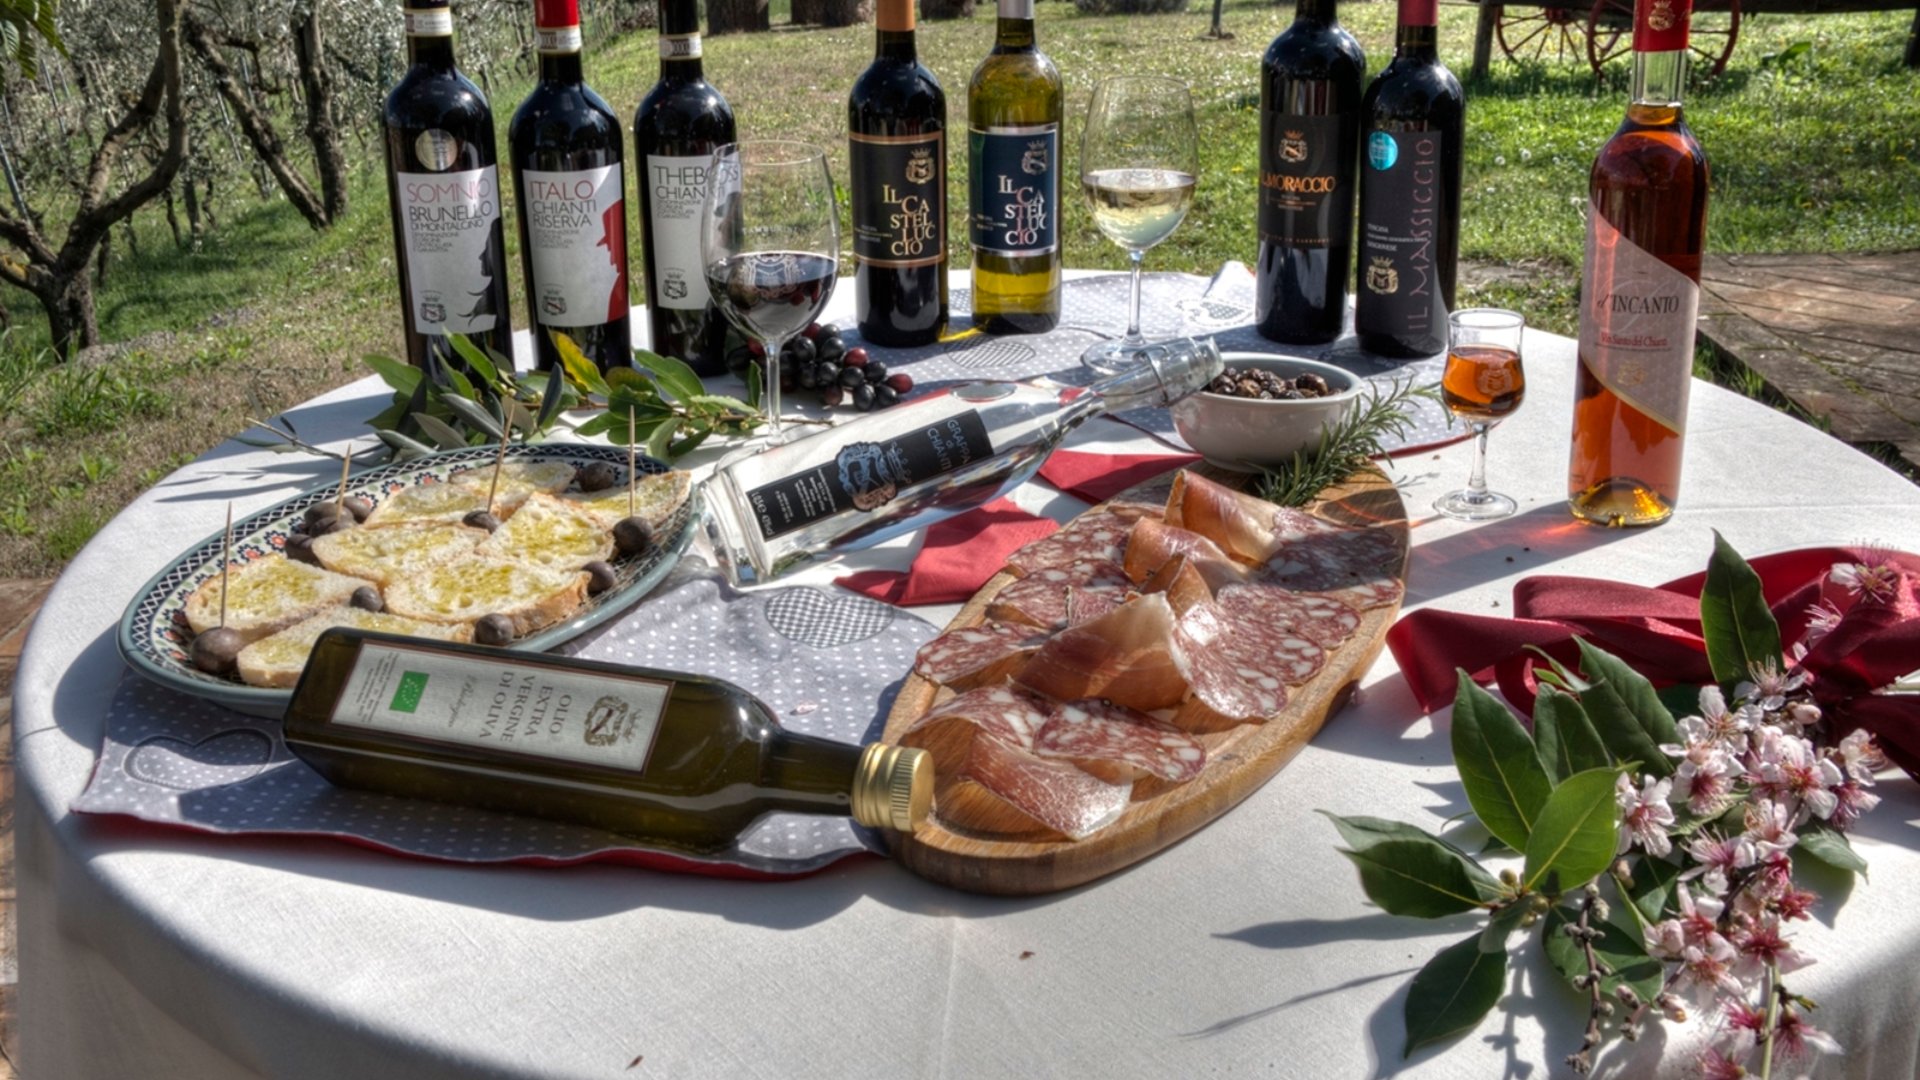 Visit and tasting at Tamburini Winery in Gambassi Terme